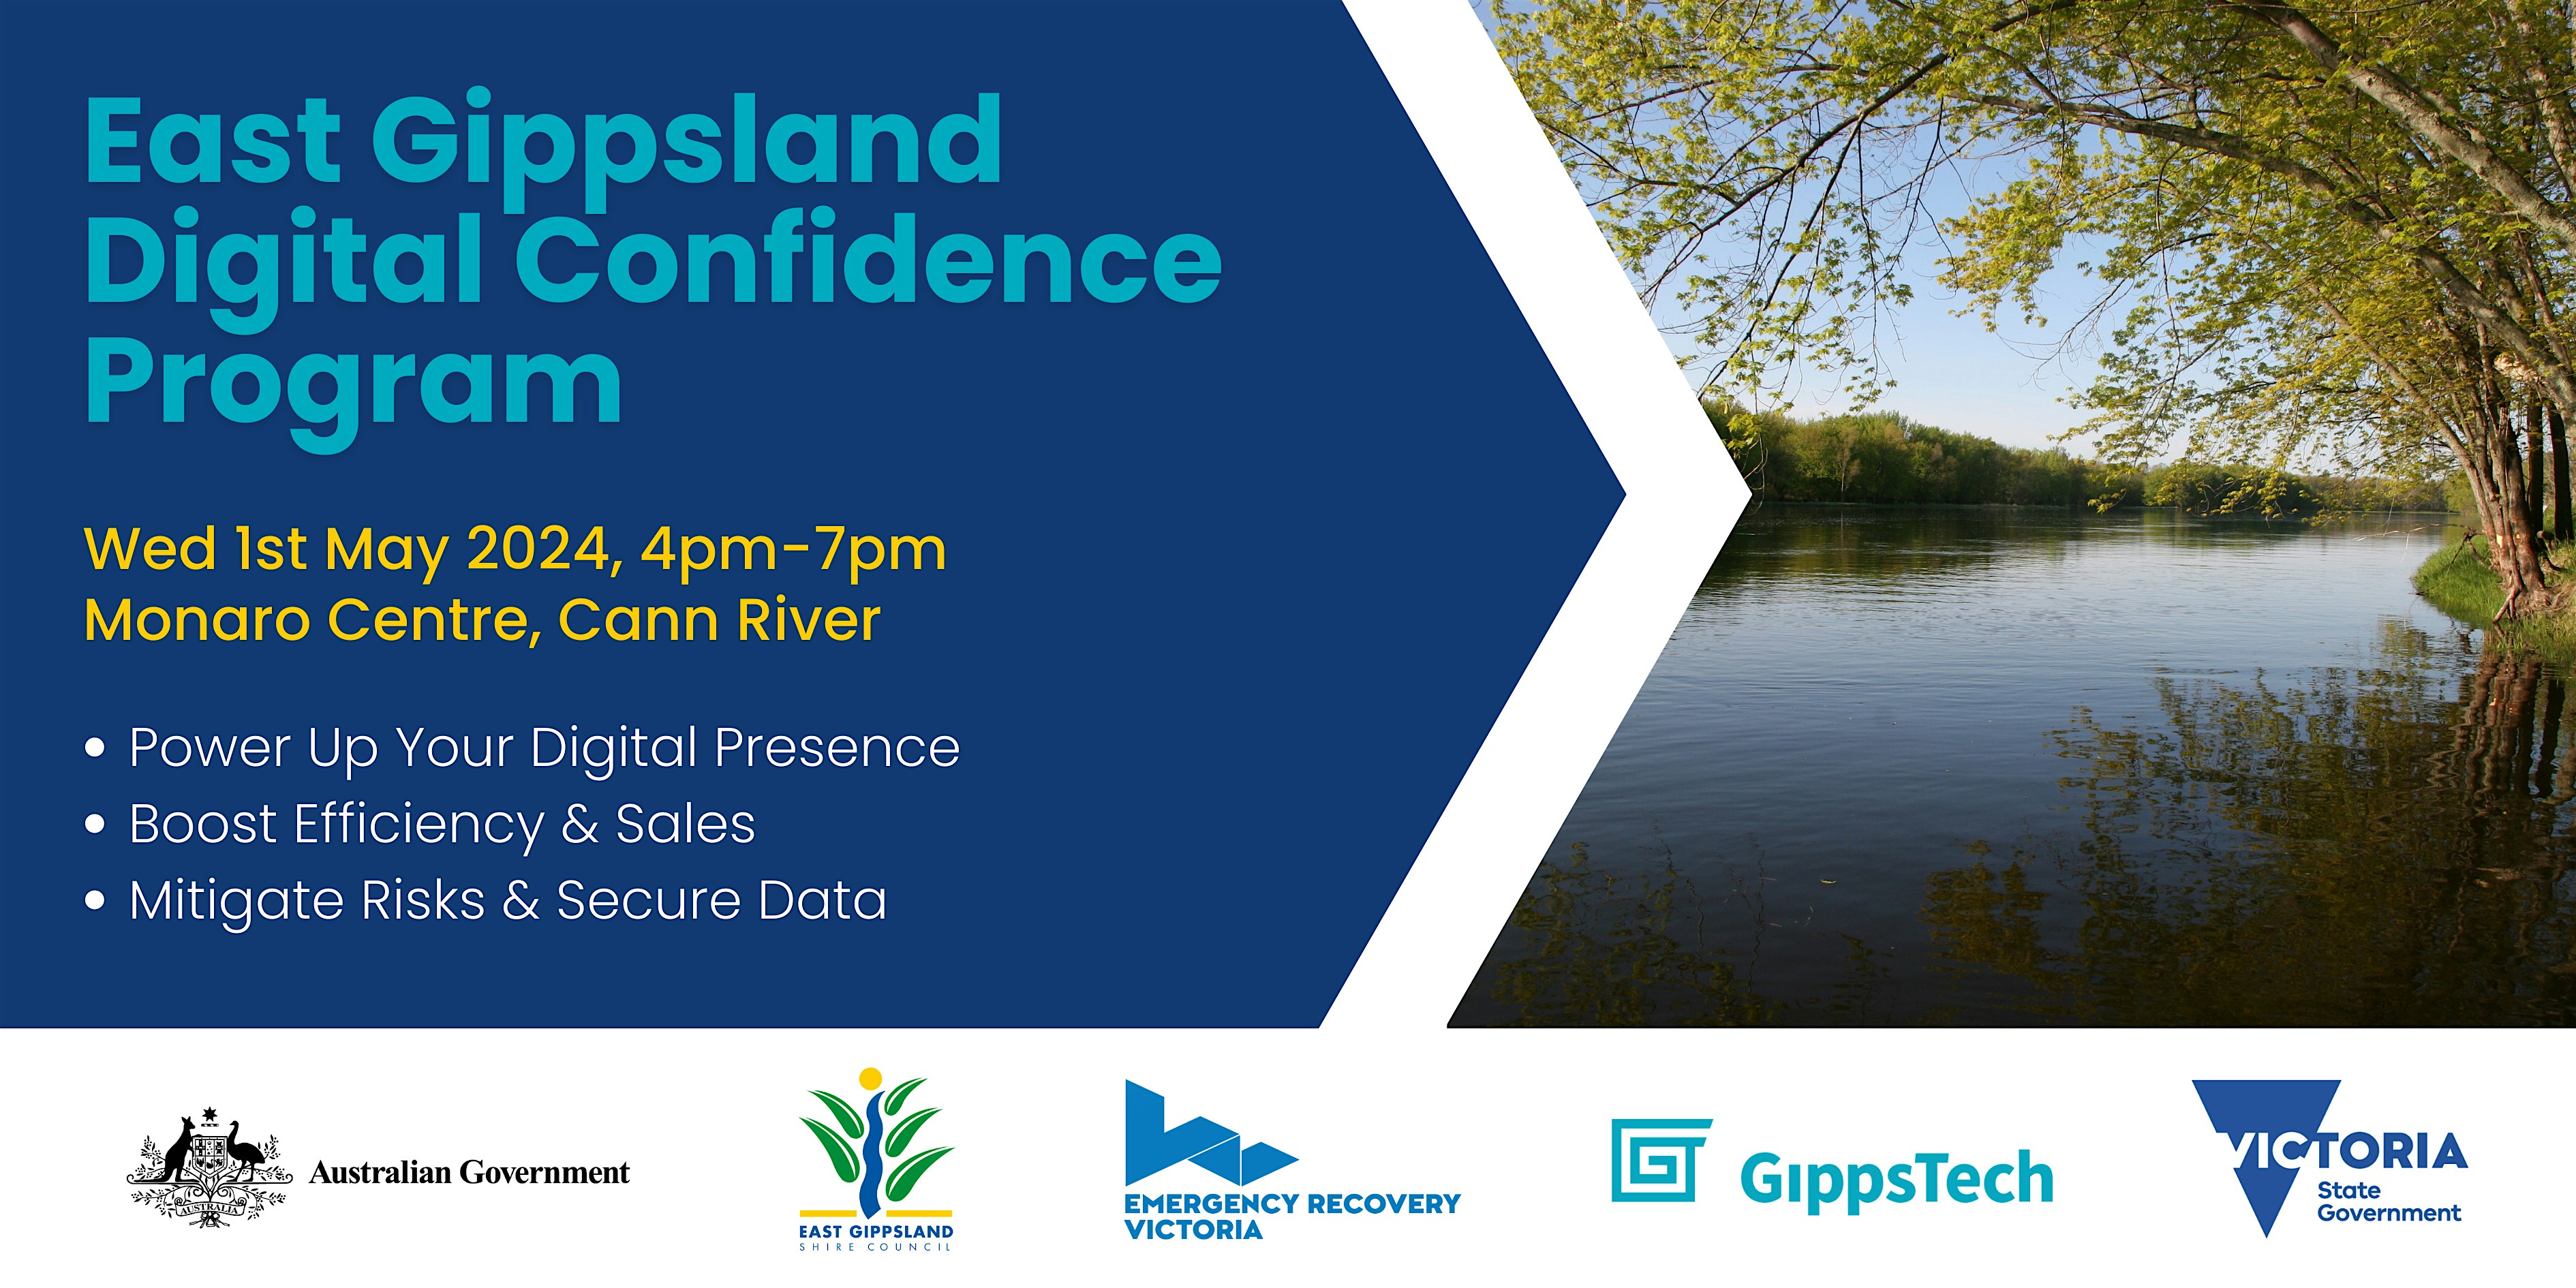 Cann River Workshop - East Gippsland Digital Confidence Program